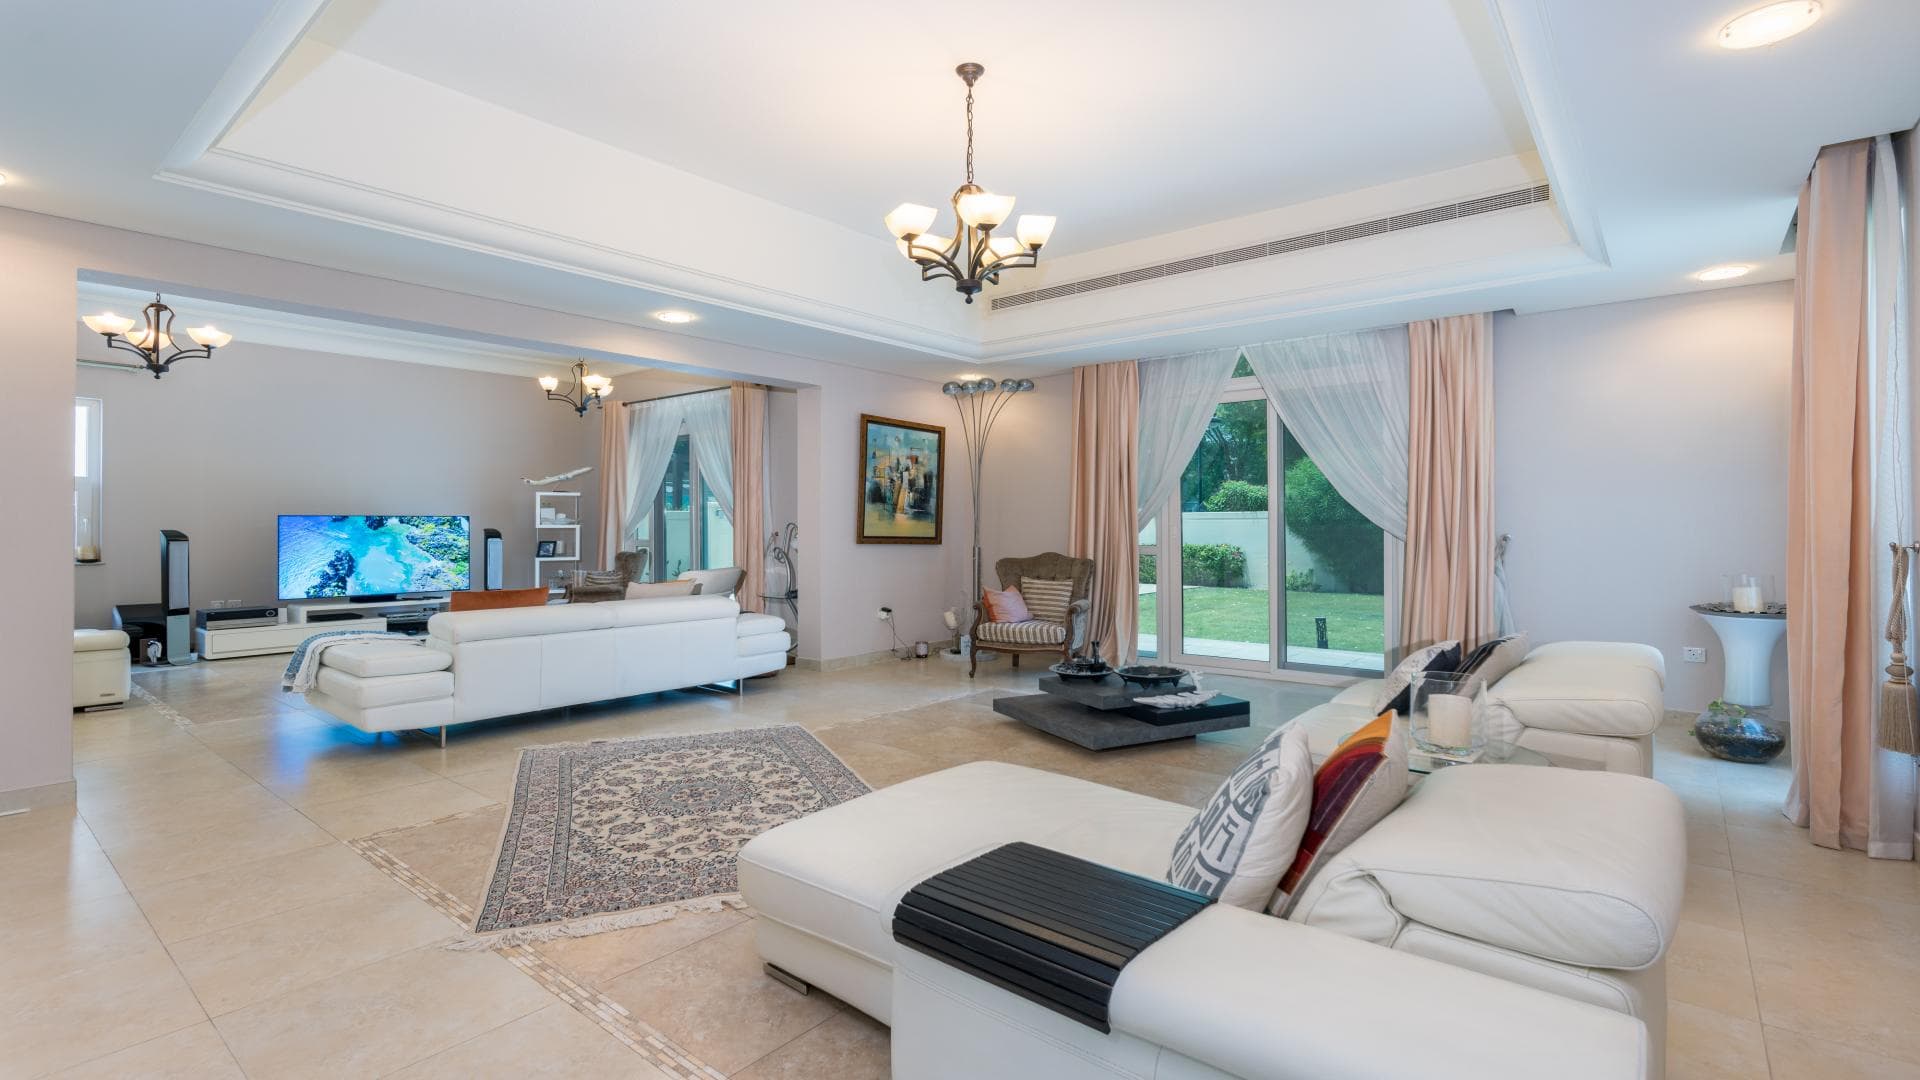 5 Bedroom Villa For Rent Al Thamam 35 Lp19427 3240d5206ccecc00.jpg